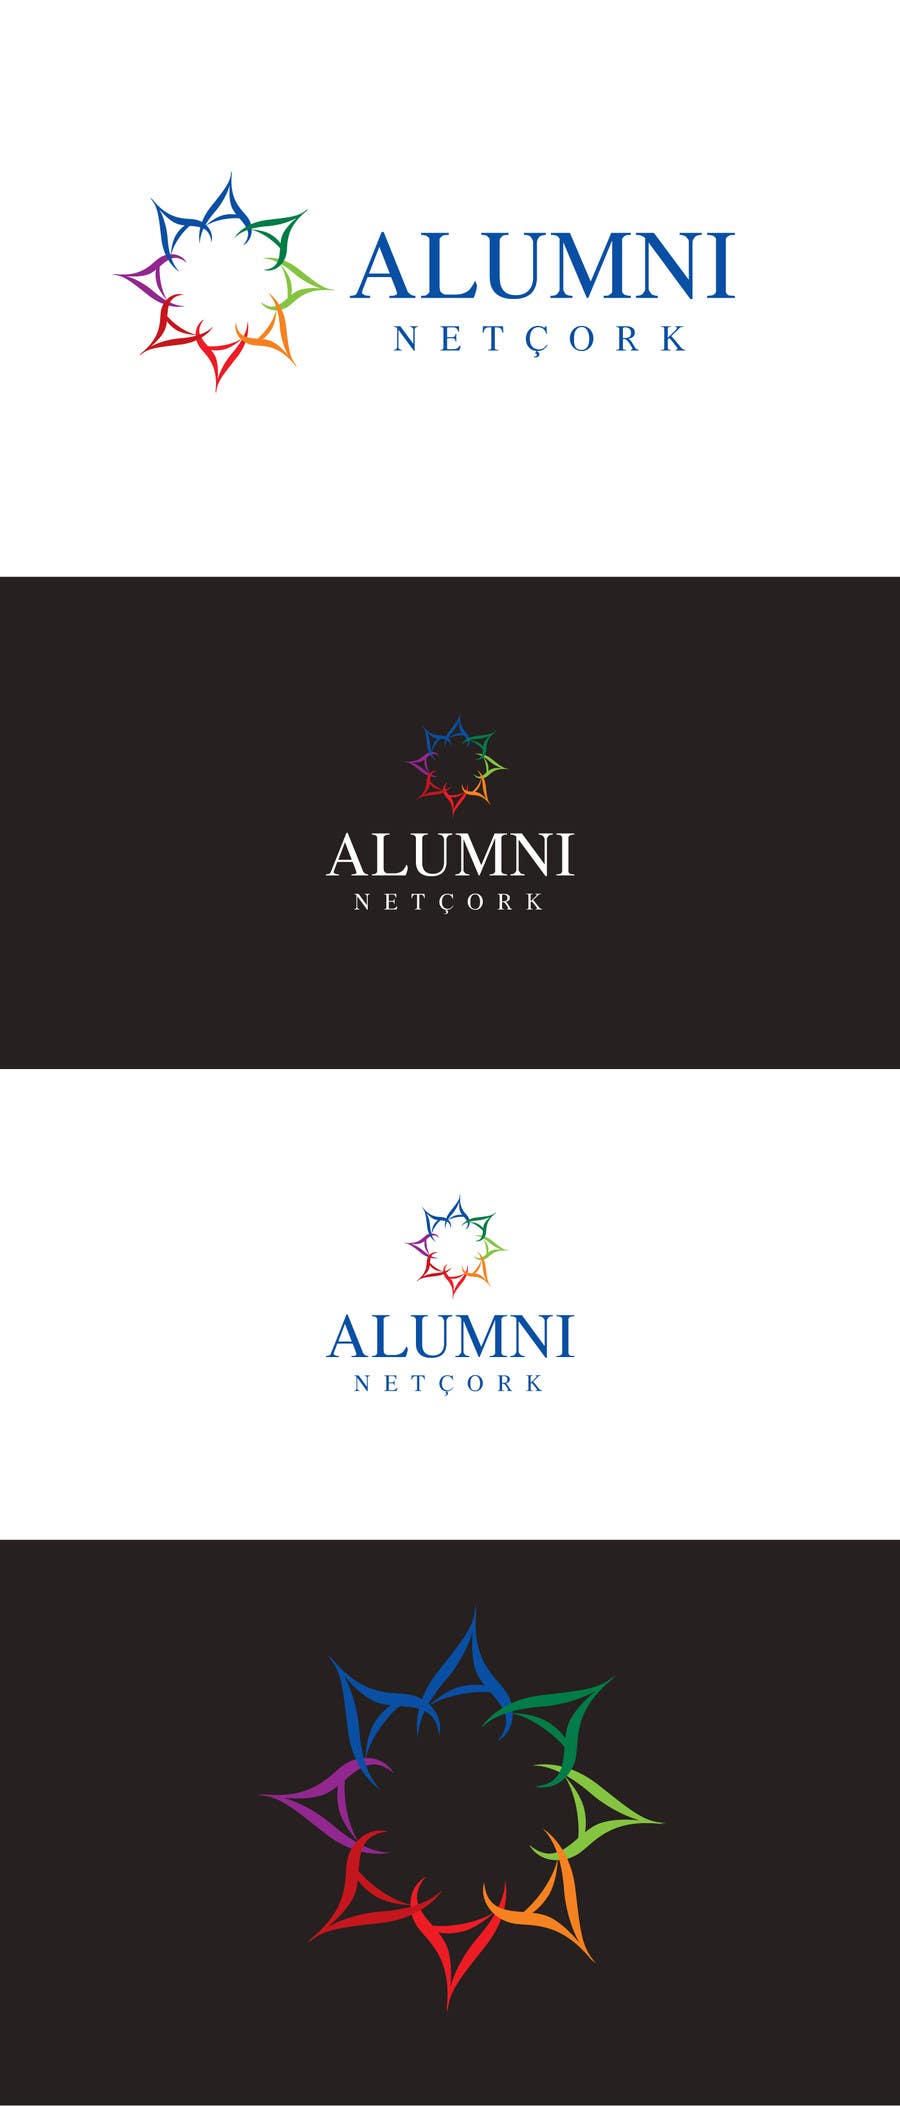 Konkurrenceindlæg #11 for                                                 Design a logo for an alumni network website
                                            